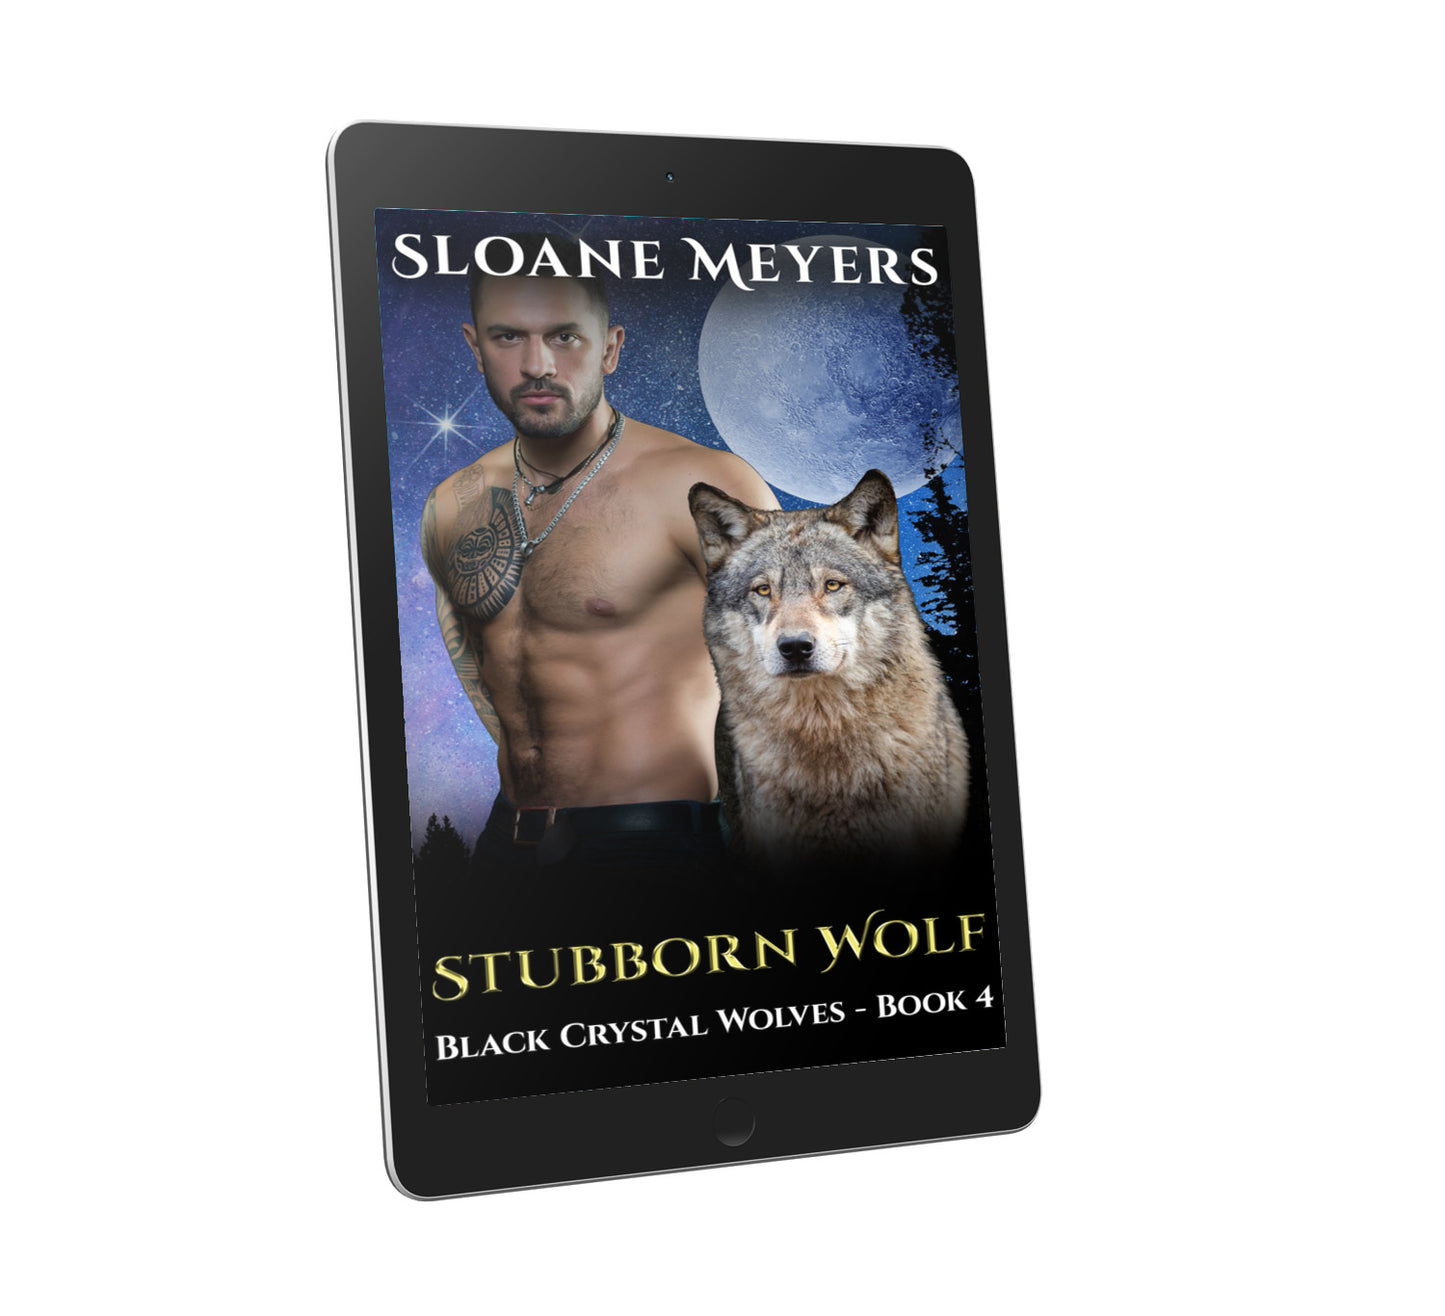 wolf shifter bear shifter romance dragon shifter romance paranormal romance book